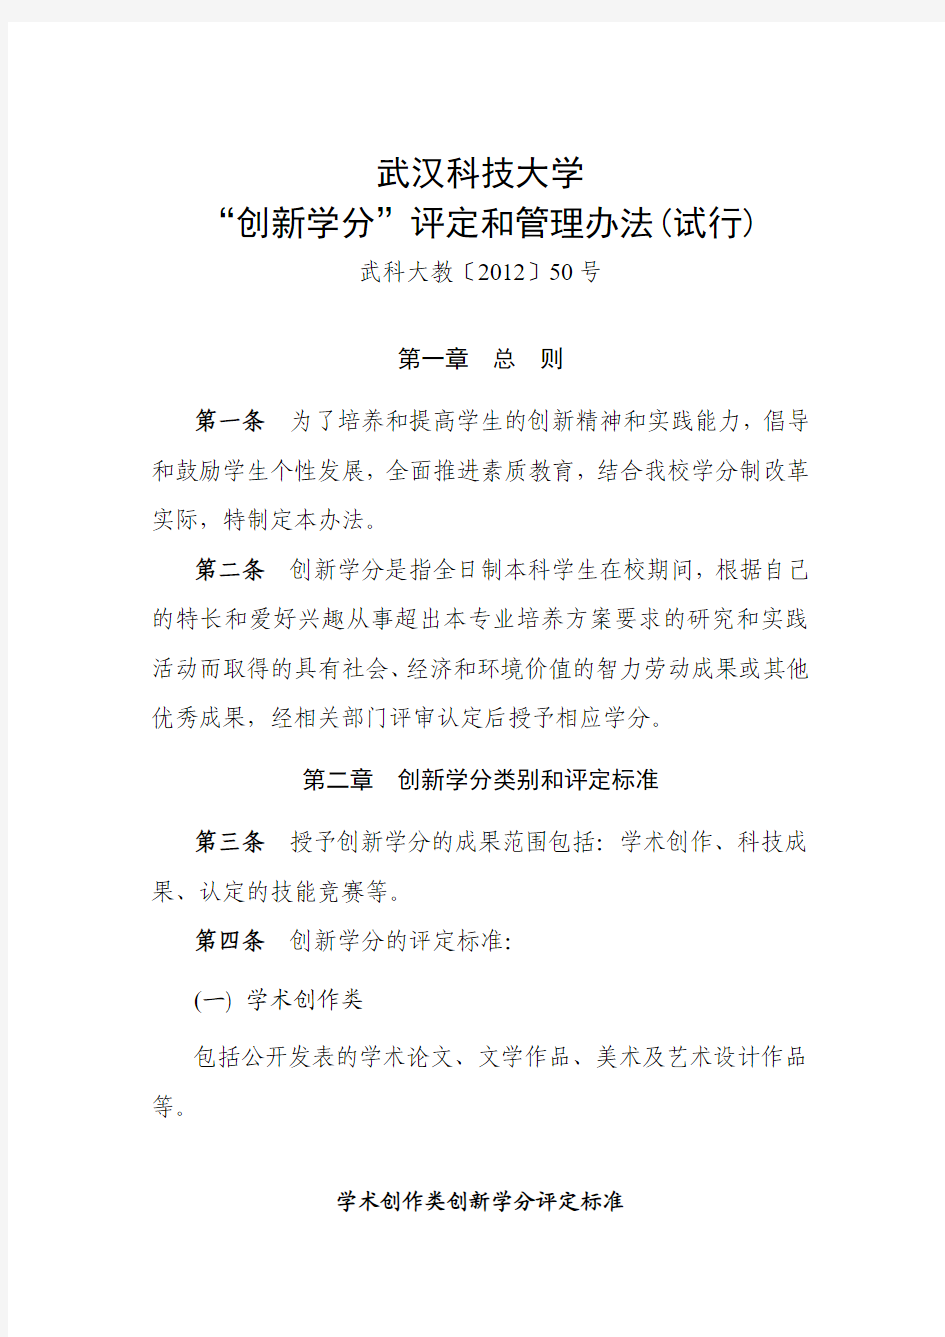 武汉科技大学“创新学分”评定和管理办法(试行)